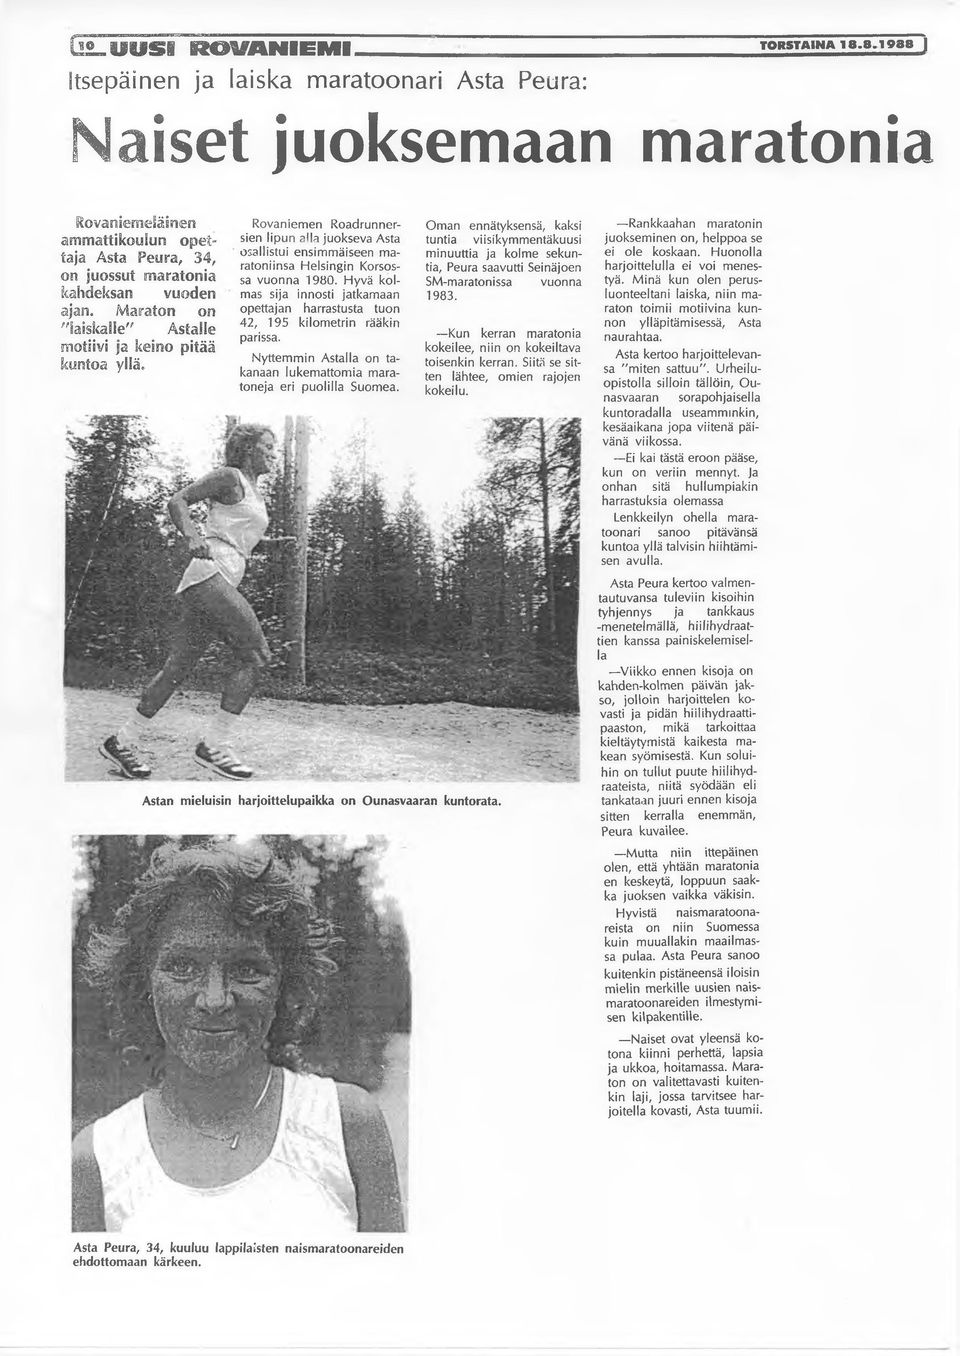 Maraton on "laiskalle" Astalle motiivi ja keino pitää kuntoa yllä» Rovaniemen Roadrunnersien lipun alla juokseva Asta osallistui ensimmäiseen maratoniinsa Helsingin Korsossa vuonna 1980.